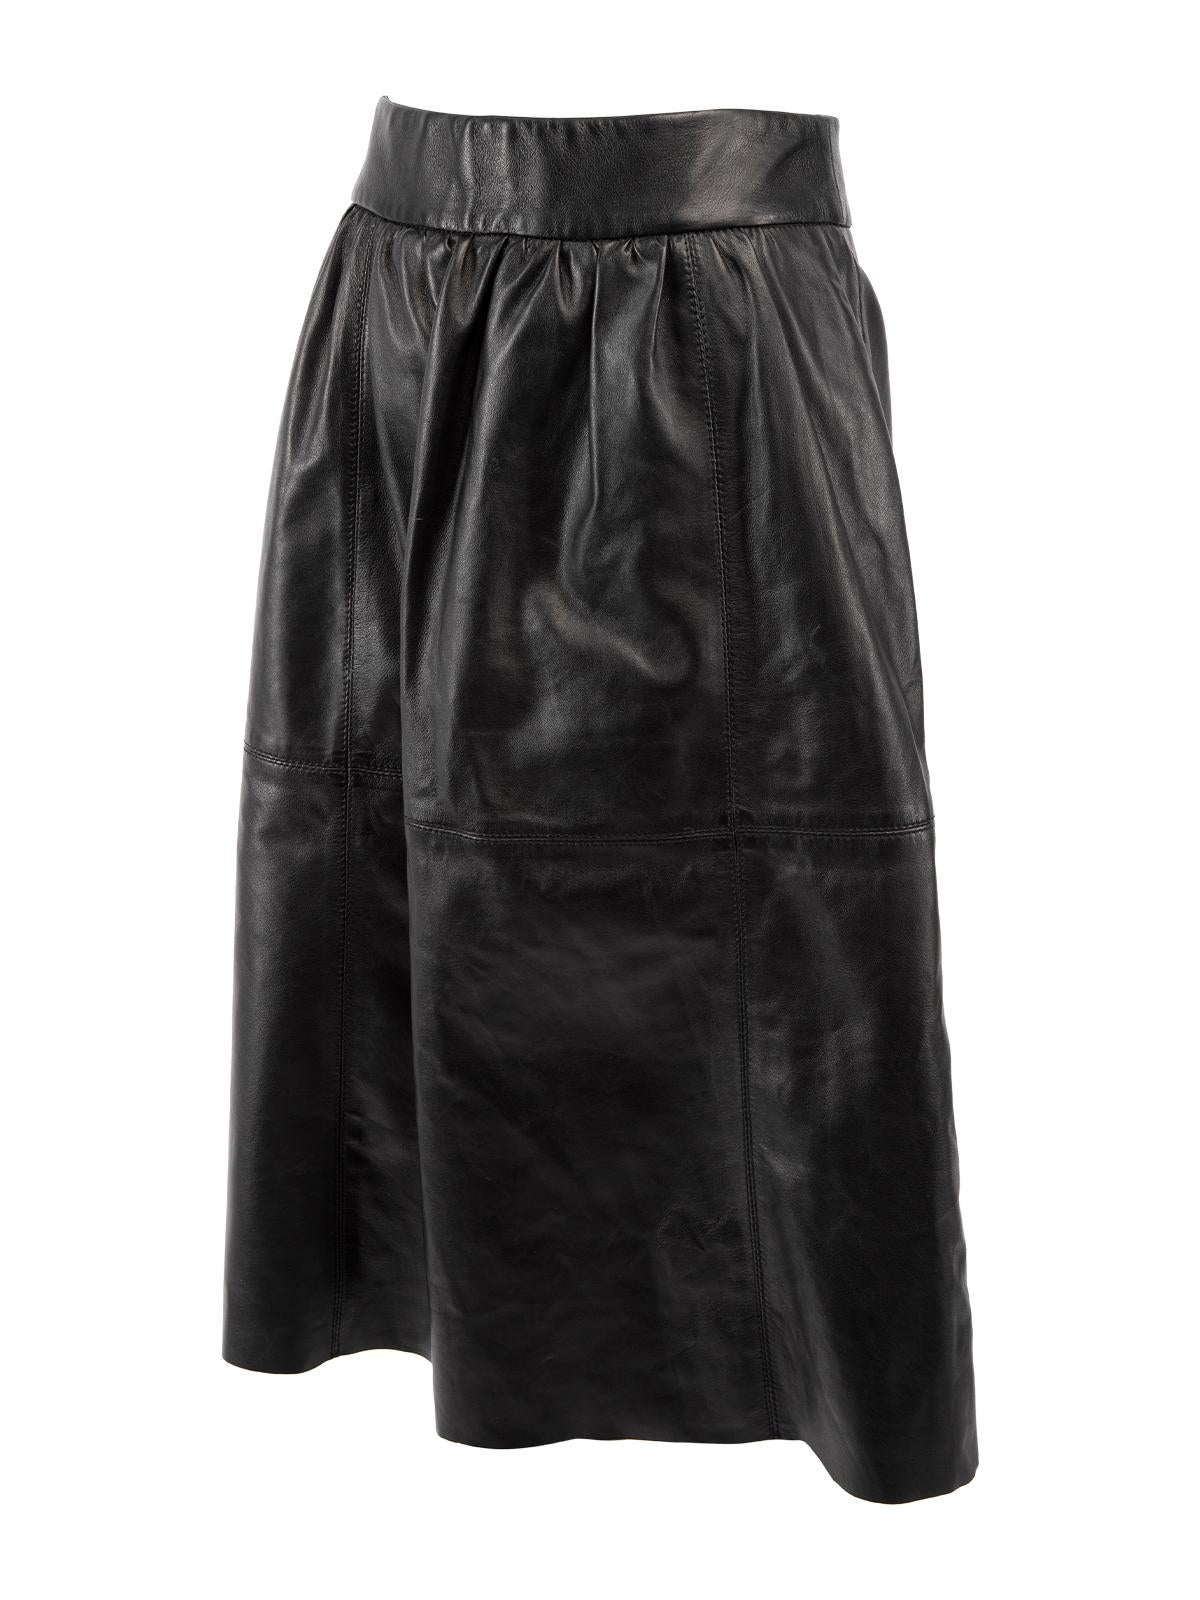 Karen Millen Women's Leather A line Skirt 1